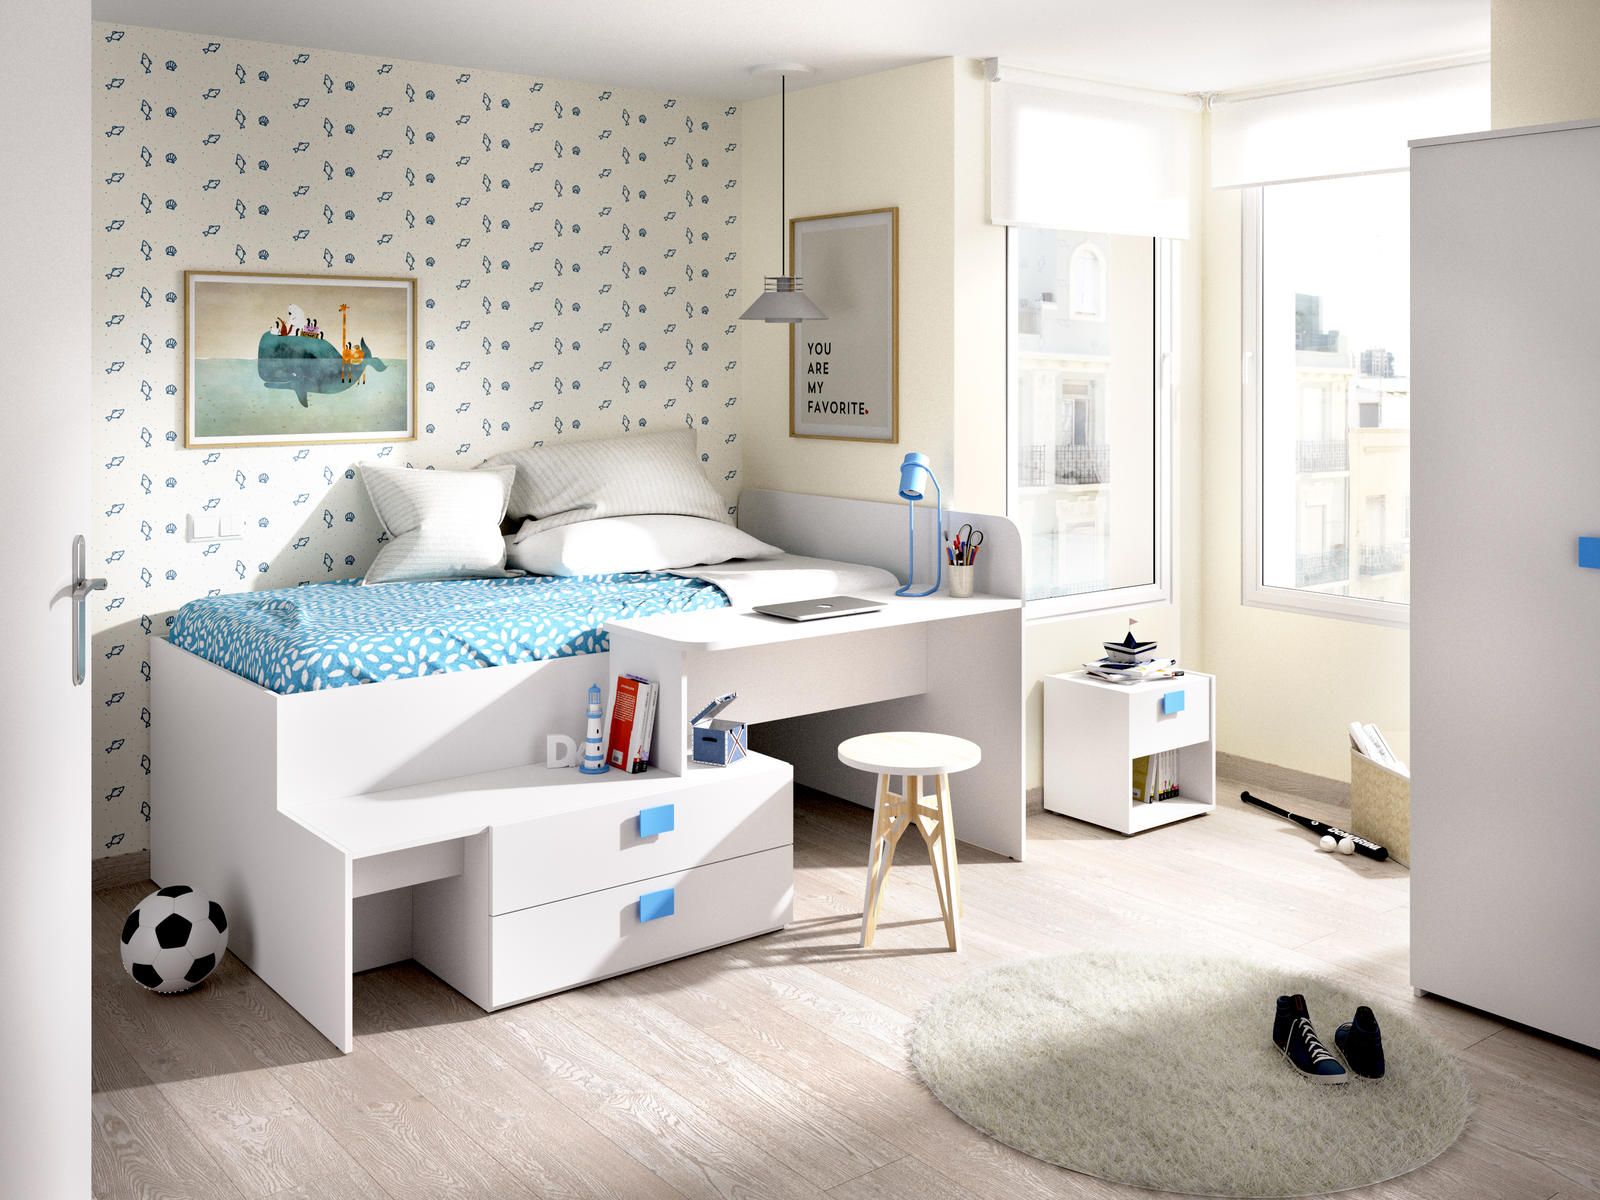 Aldo Kompaktní dětská postel Chic, white-blue - Nábytek ALDO